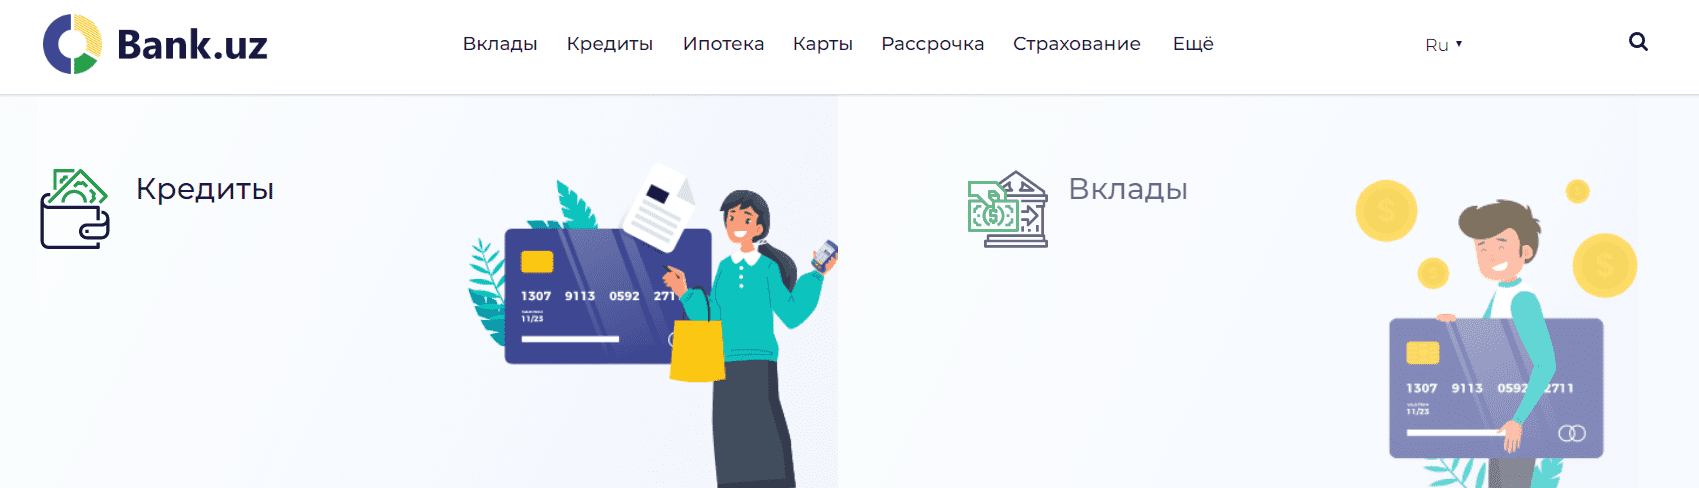 Банк.uz (Bank.uz) - официальный сайт